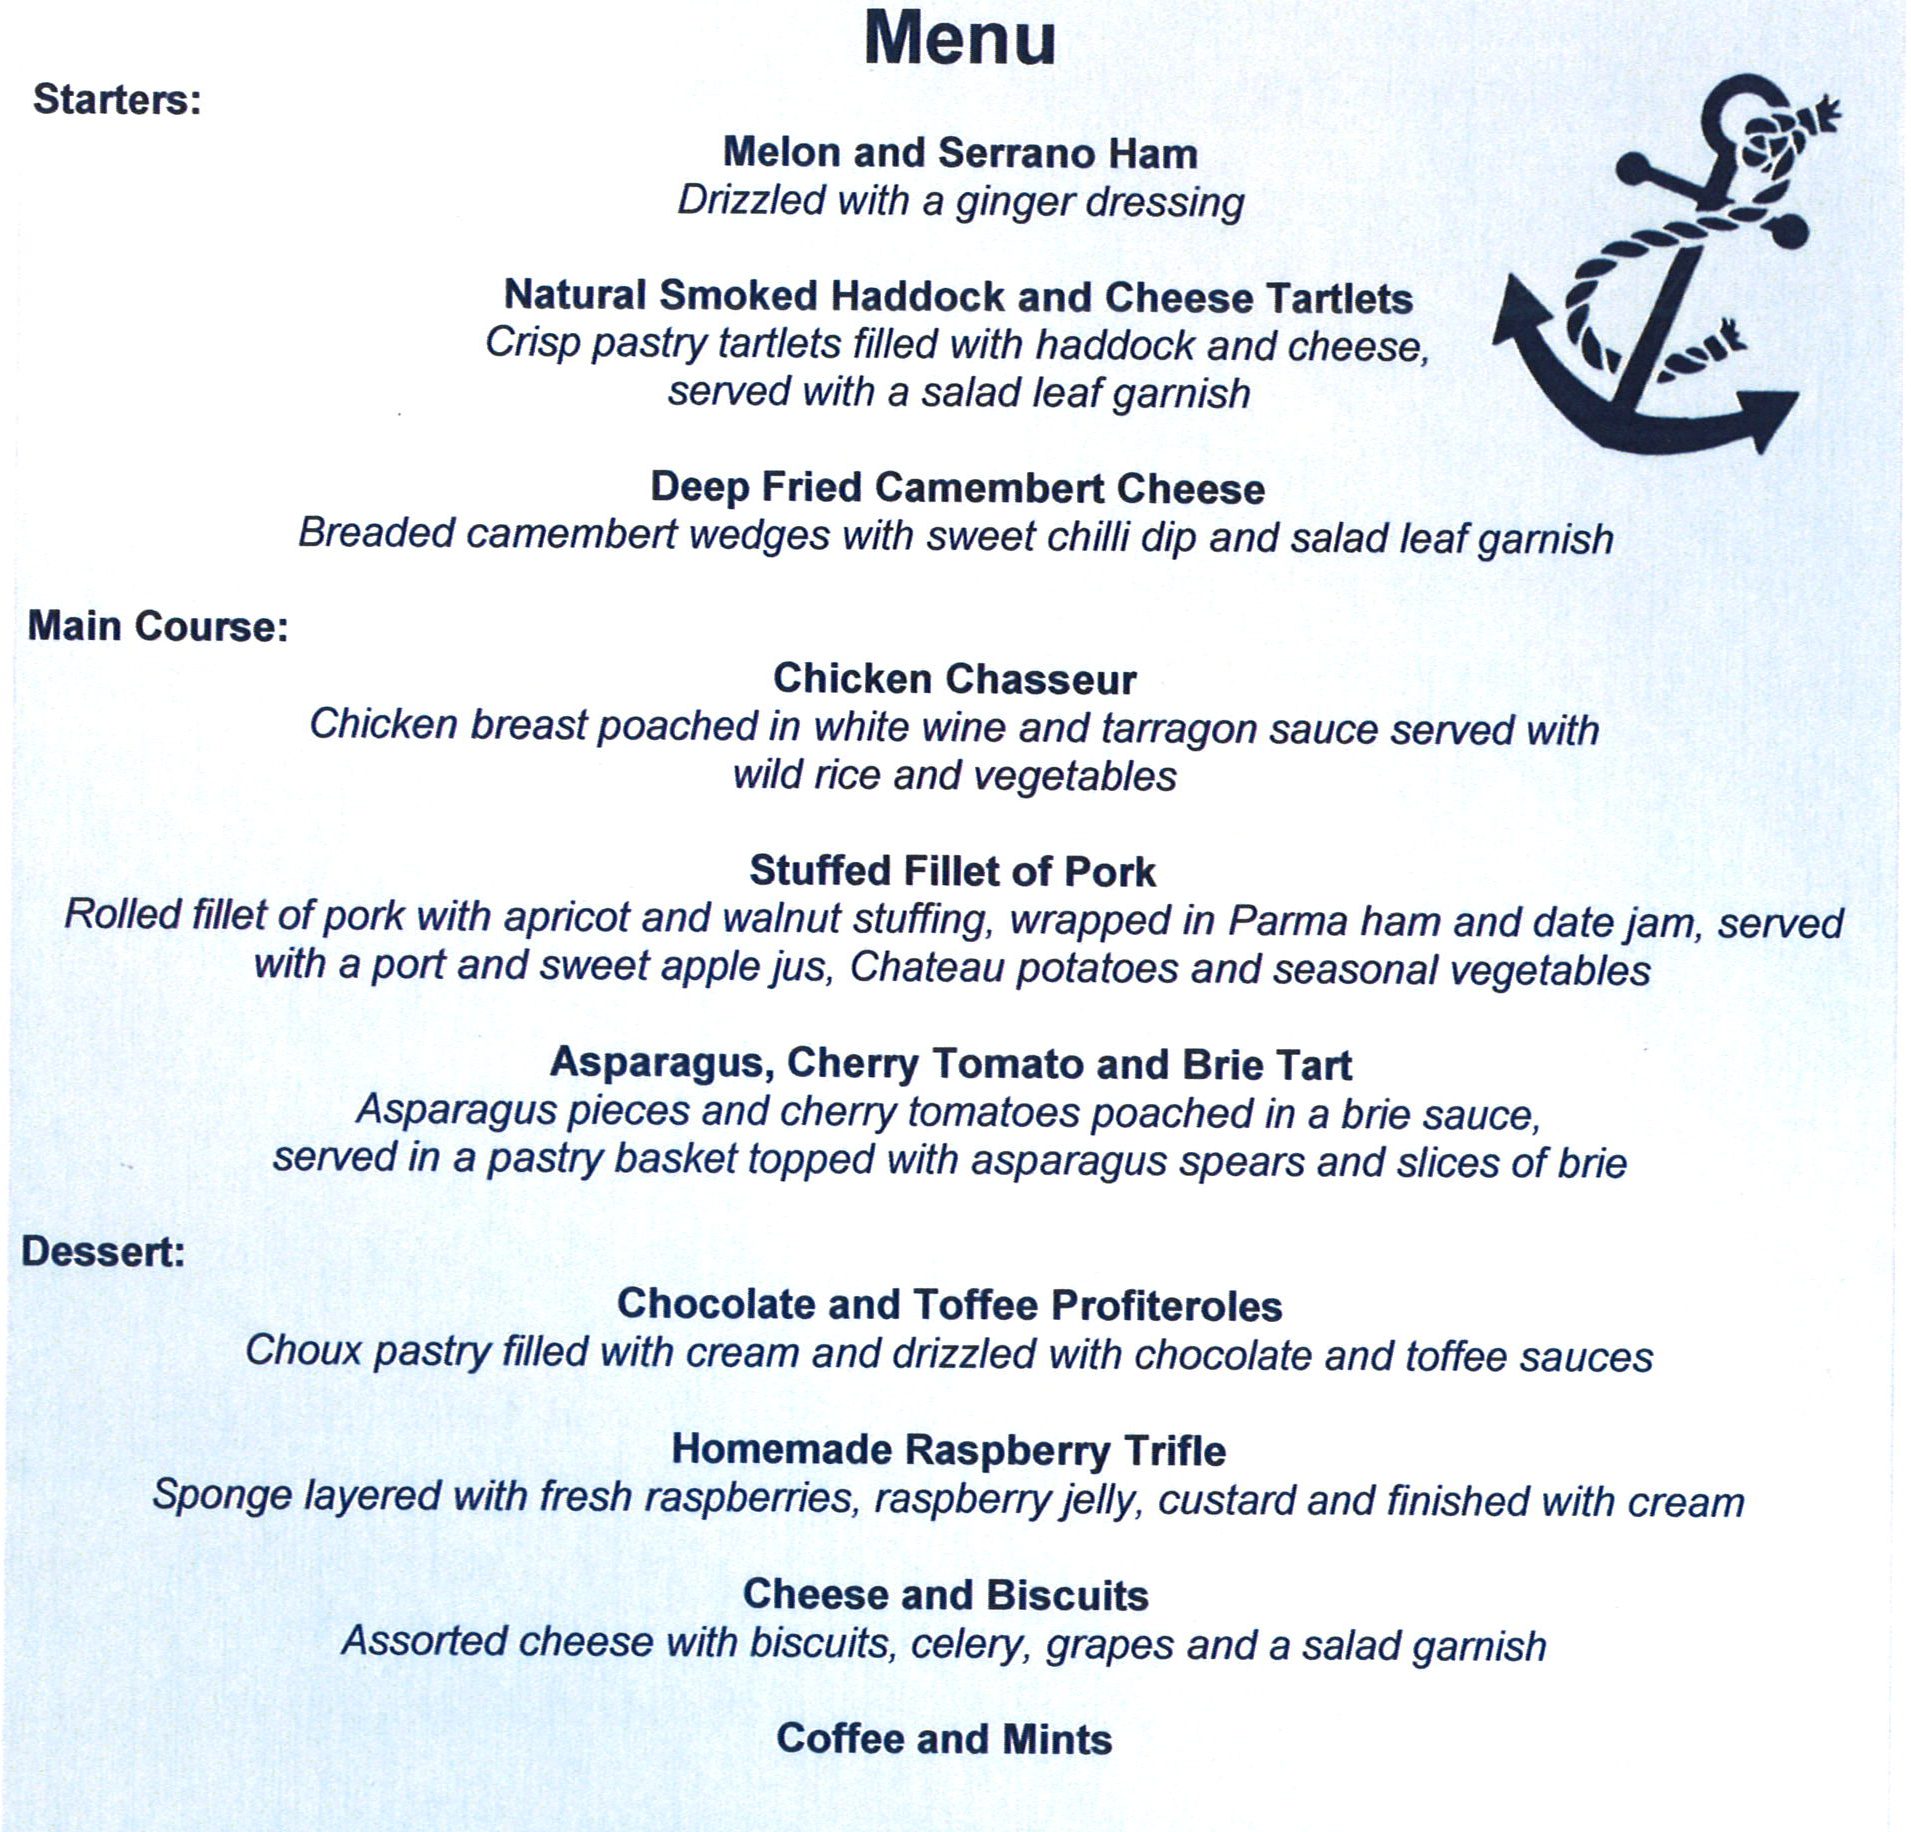 newcastle yacht club menu specials pdf